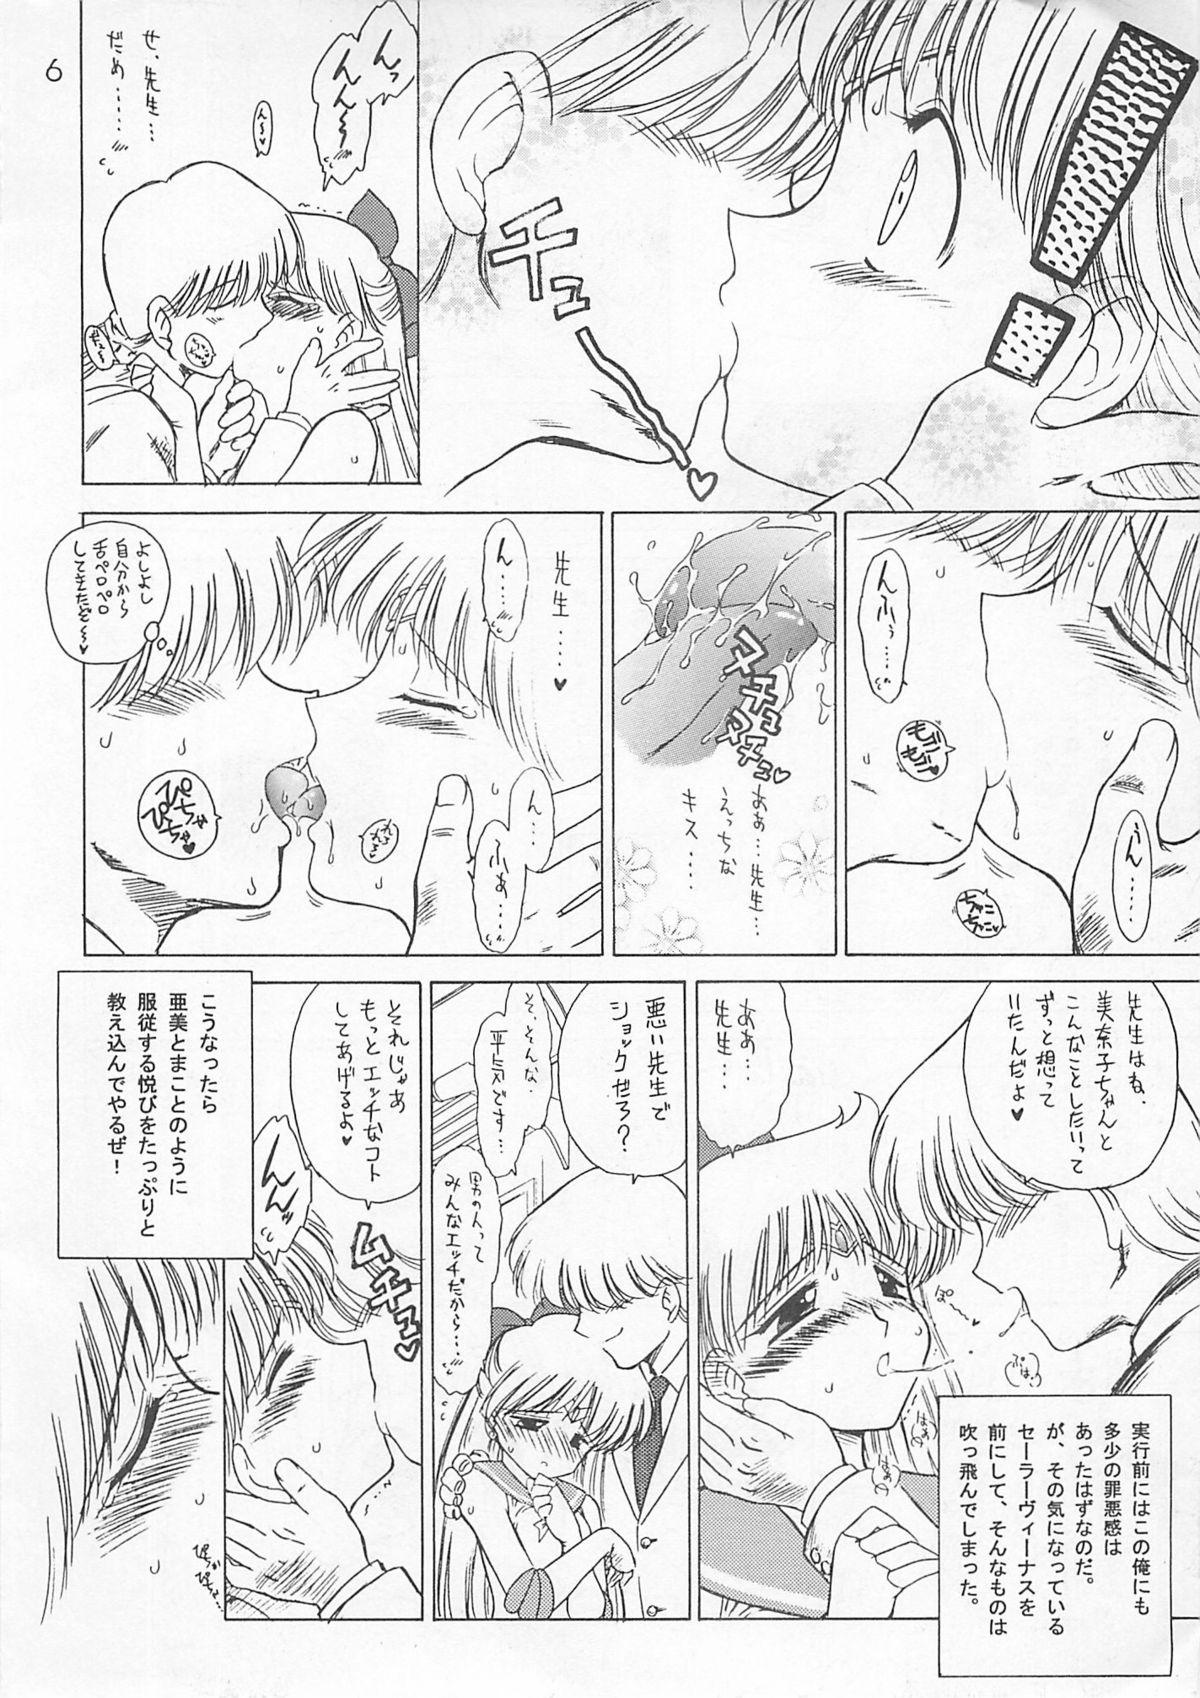 Vaginal Yo-Yo Ma - Sailor moon Stripper - Page 5